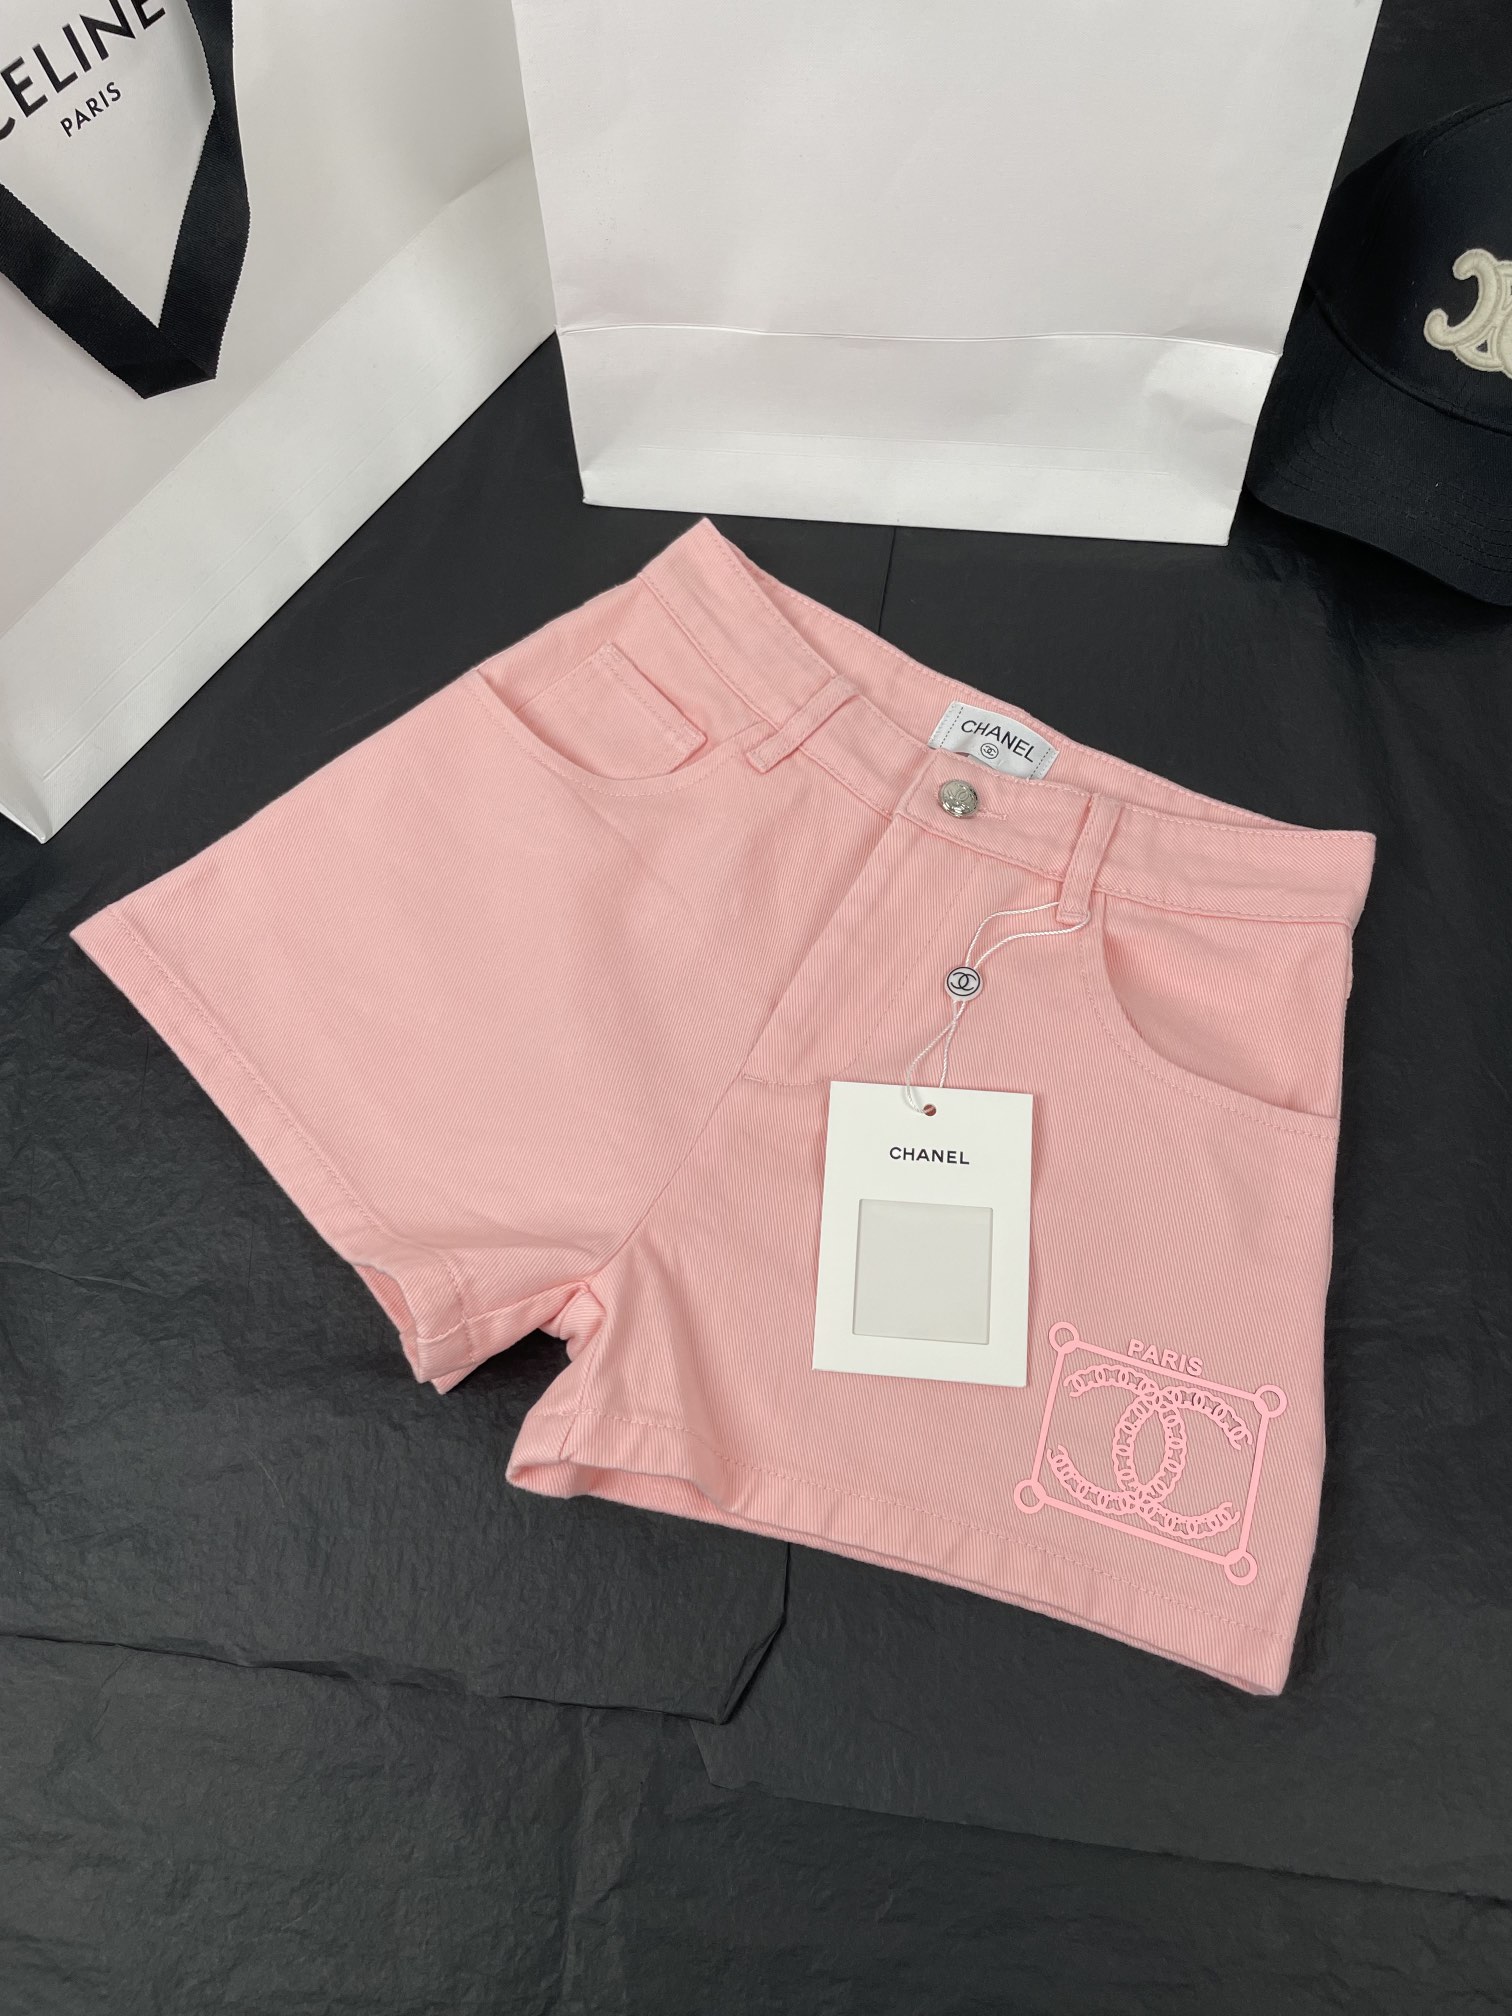 シャネルズボンコピー ショートパンツ 夏服 美しい ファッション 柔らかい 三つ色 ピンク_3